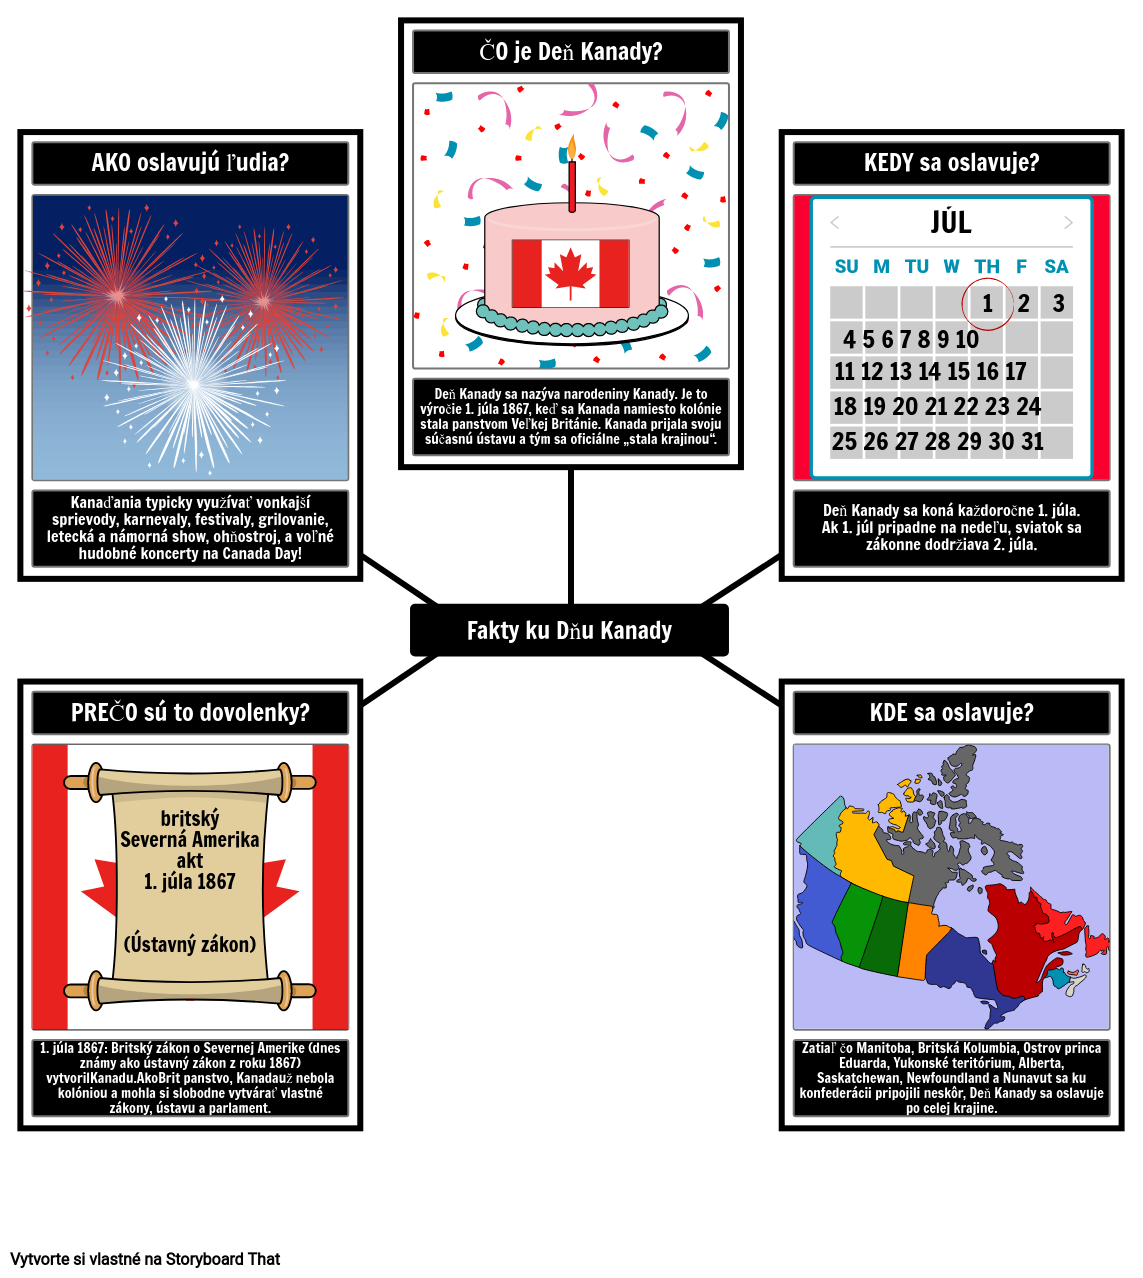 Fakty ku Dňu Kanady